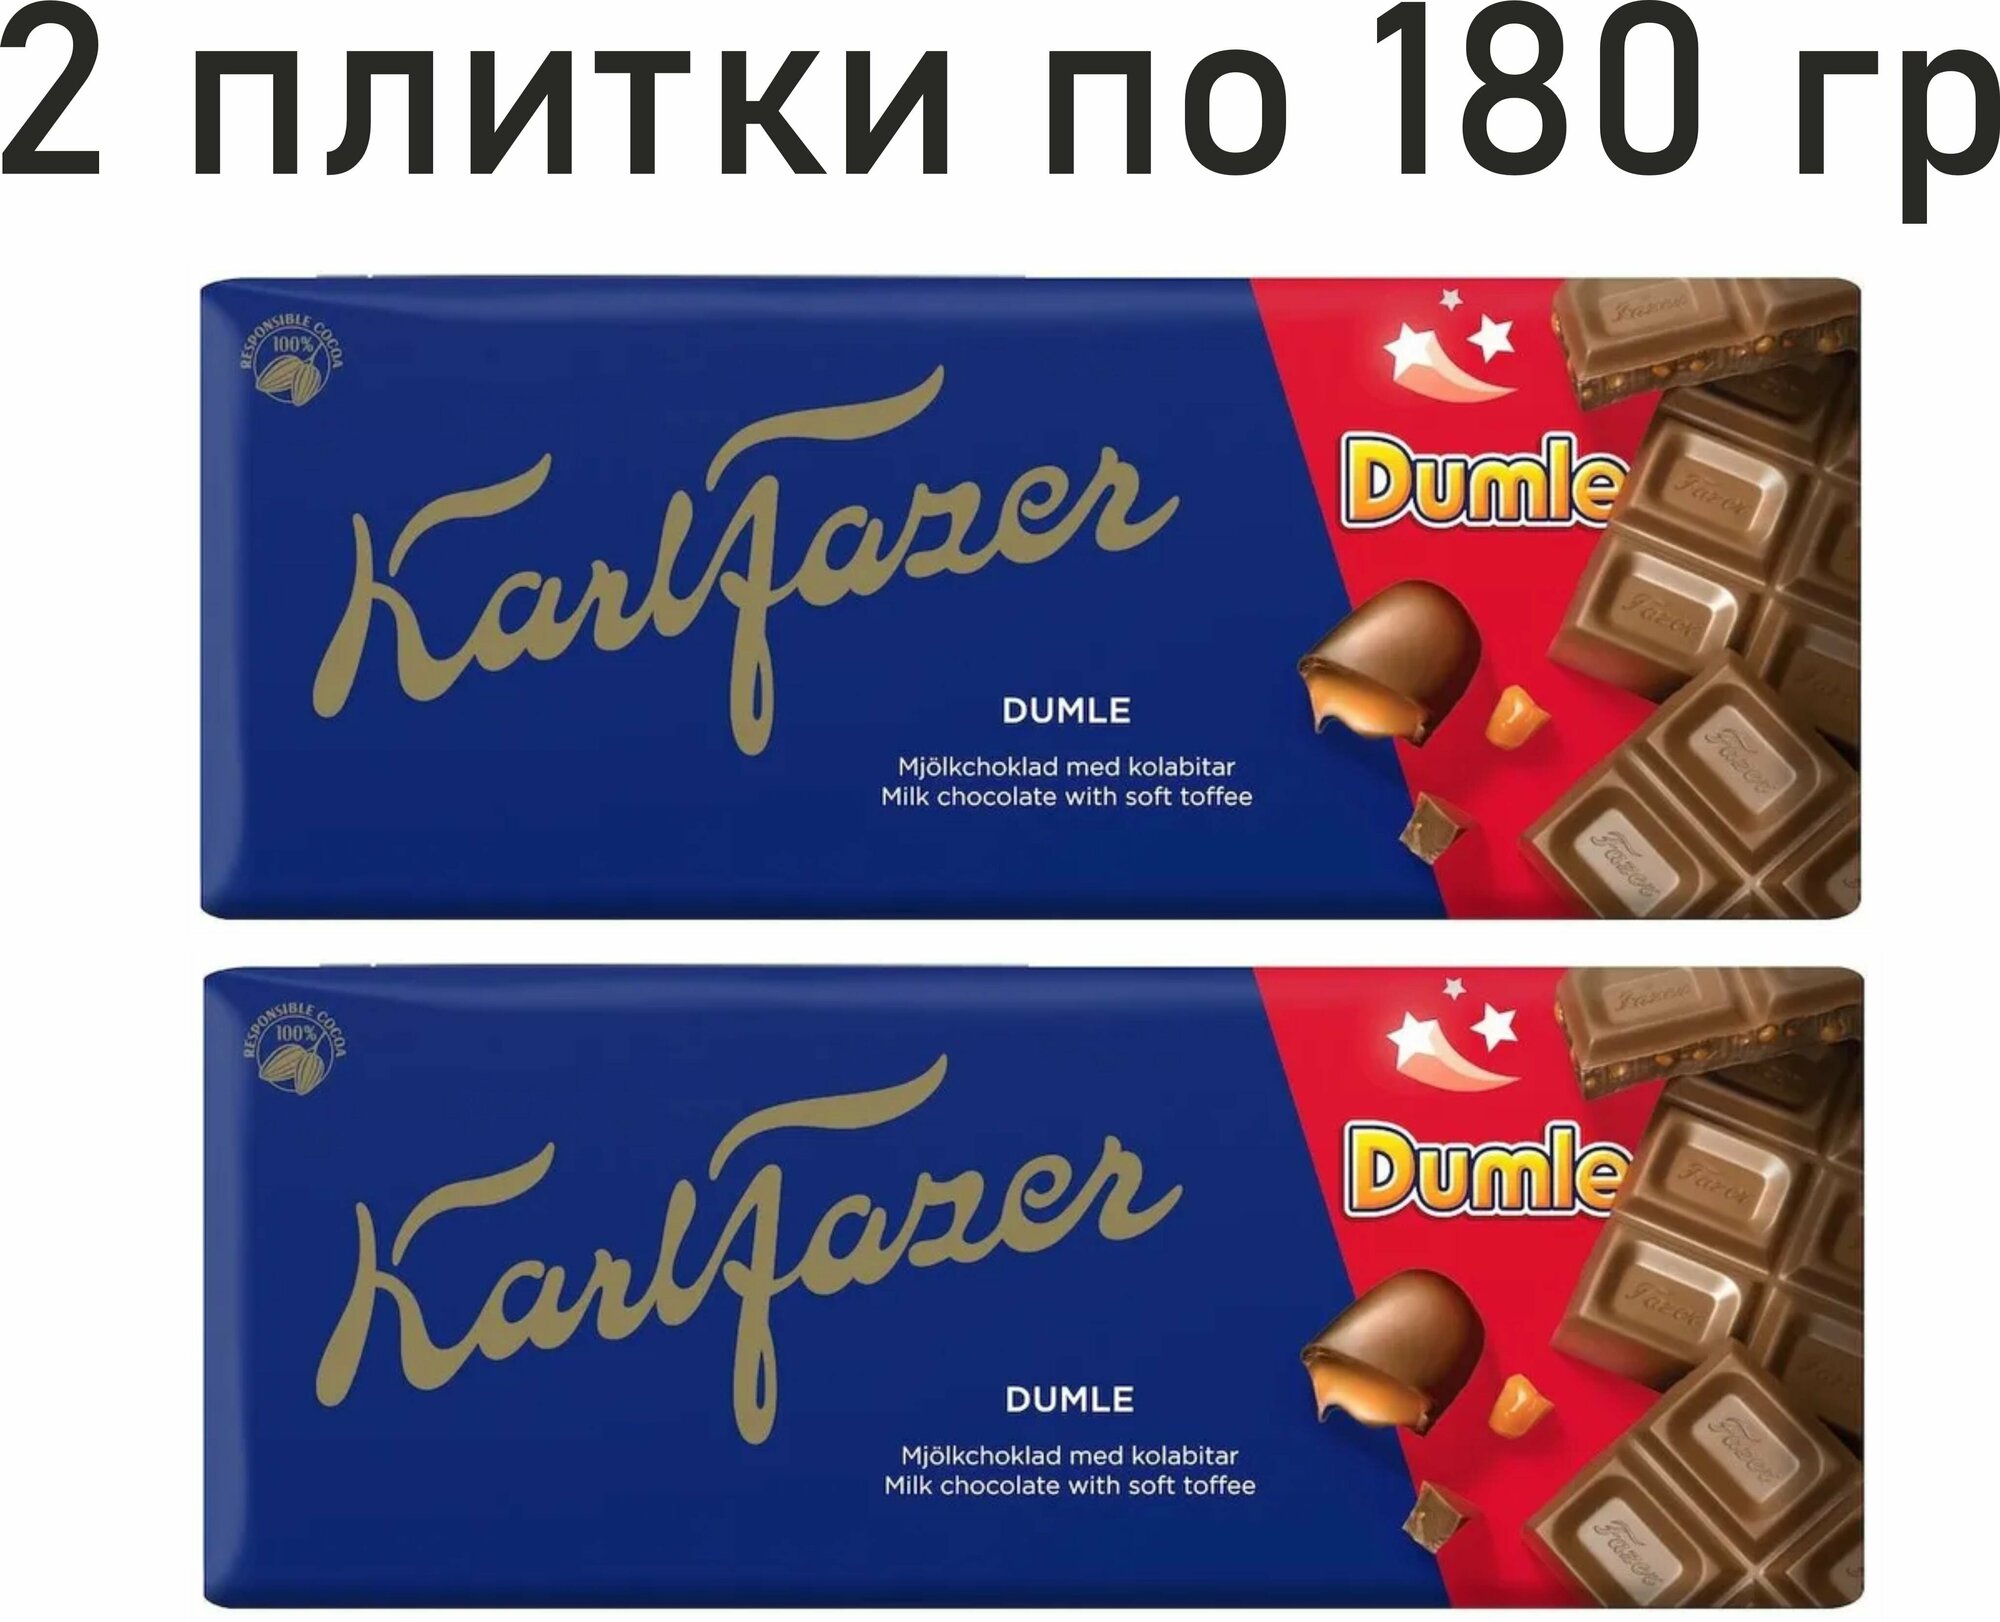 2 шт. Молочный шоколад c ирисками, Karl Fazer Dumle, 180 гр. (360 гр) Финляндия